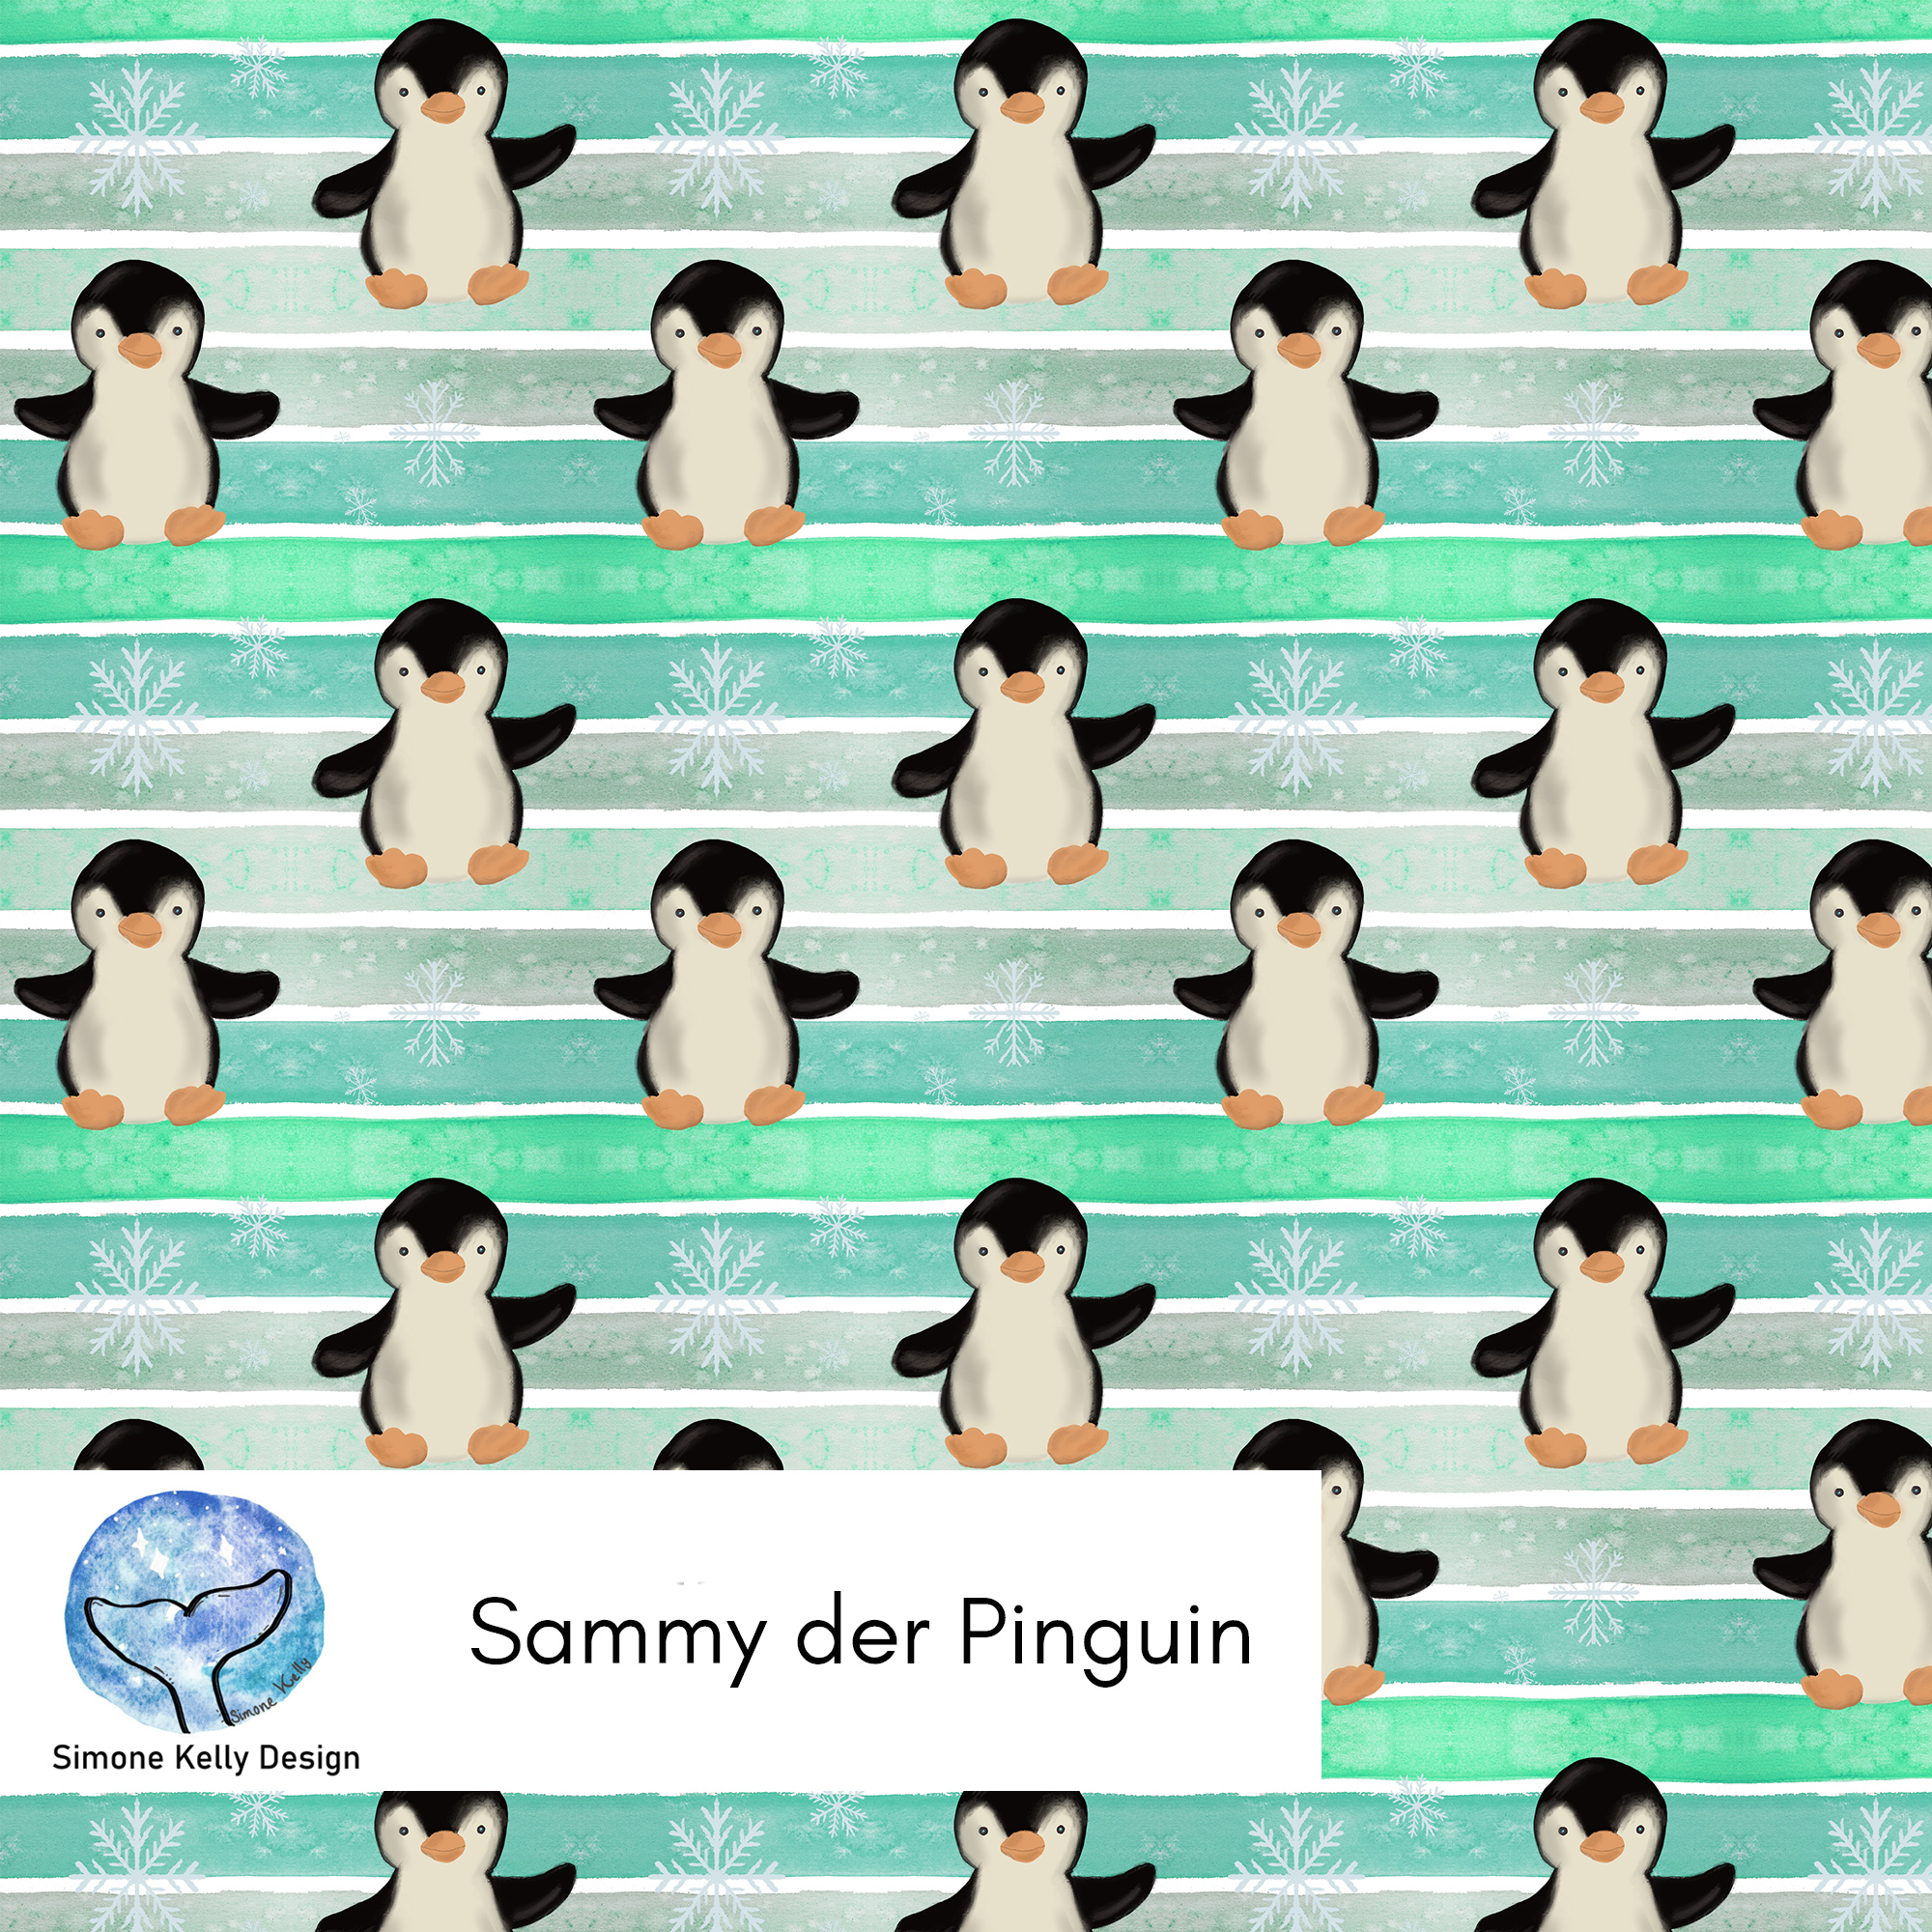 Sammy der Pinguin Allover Mint